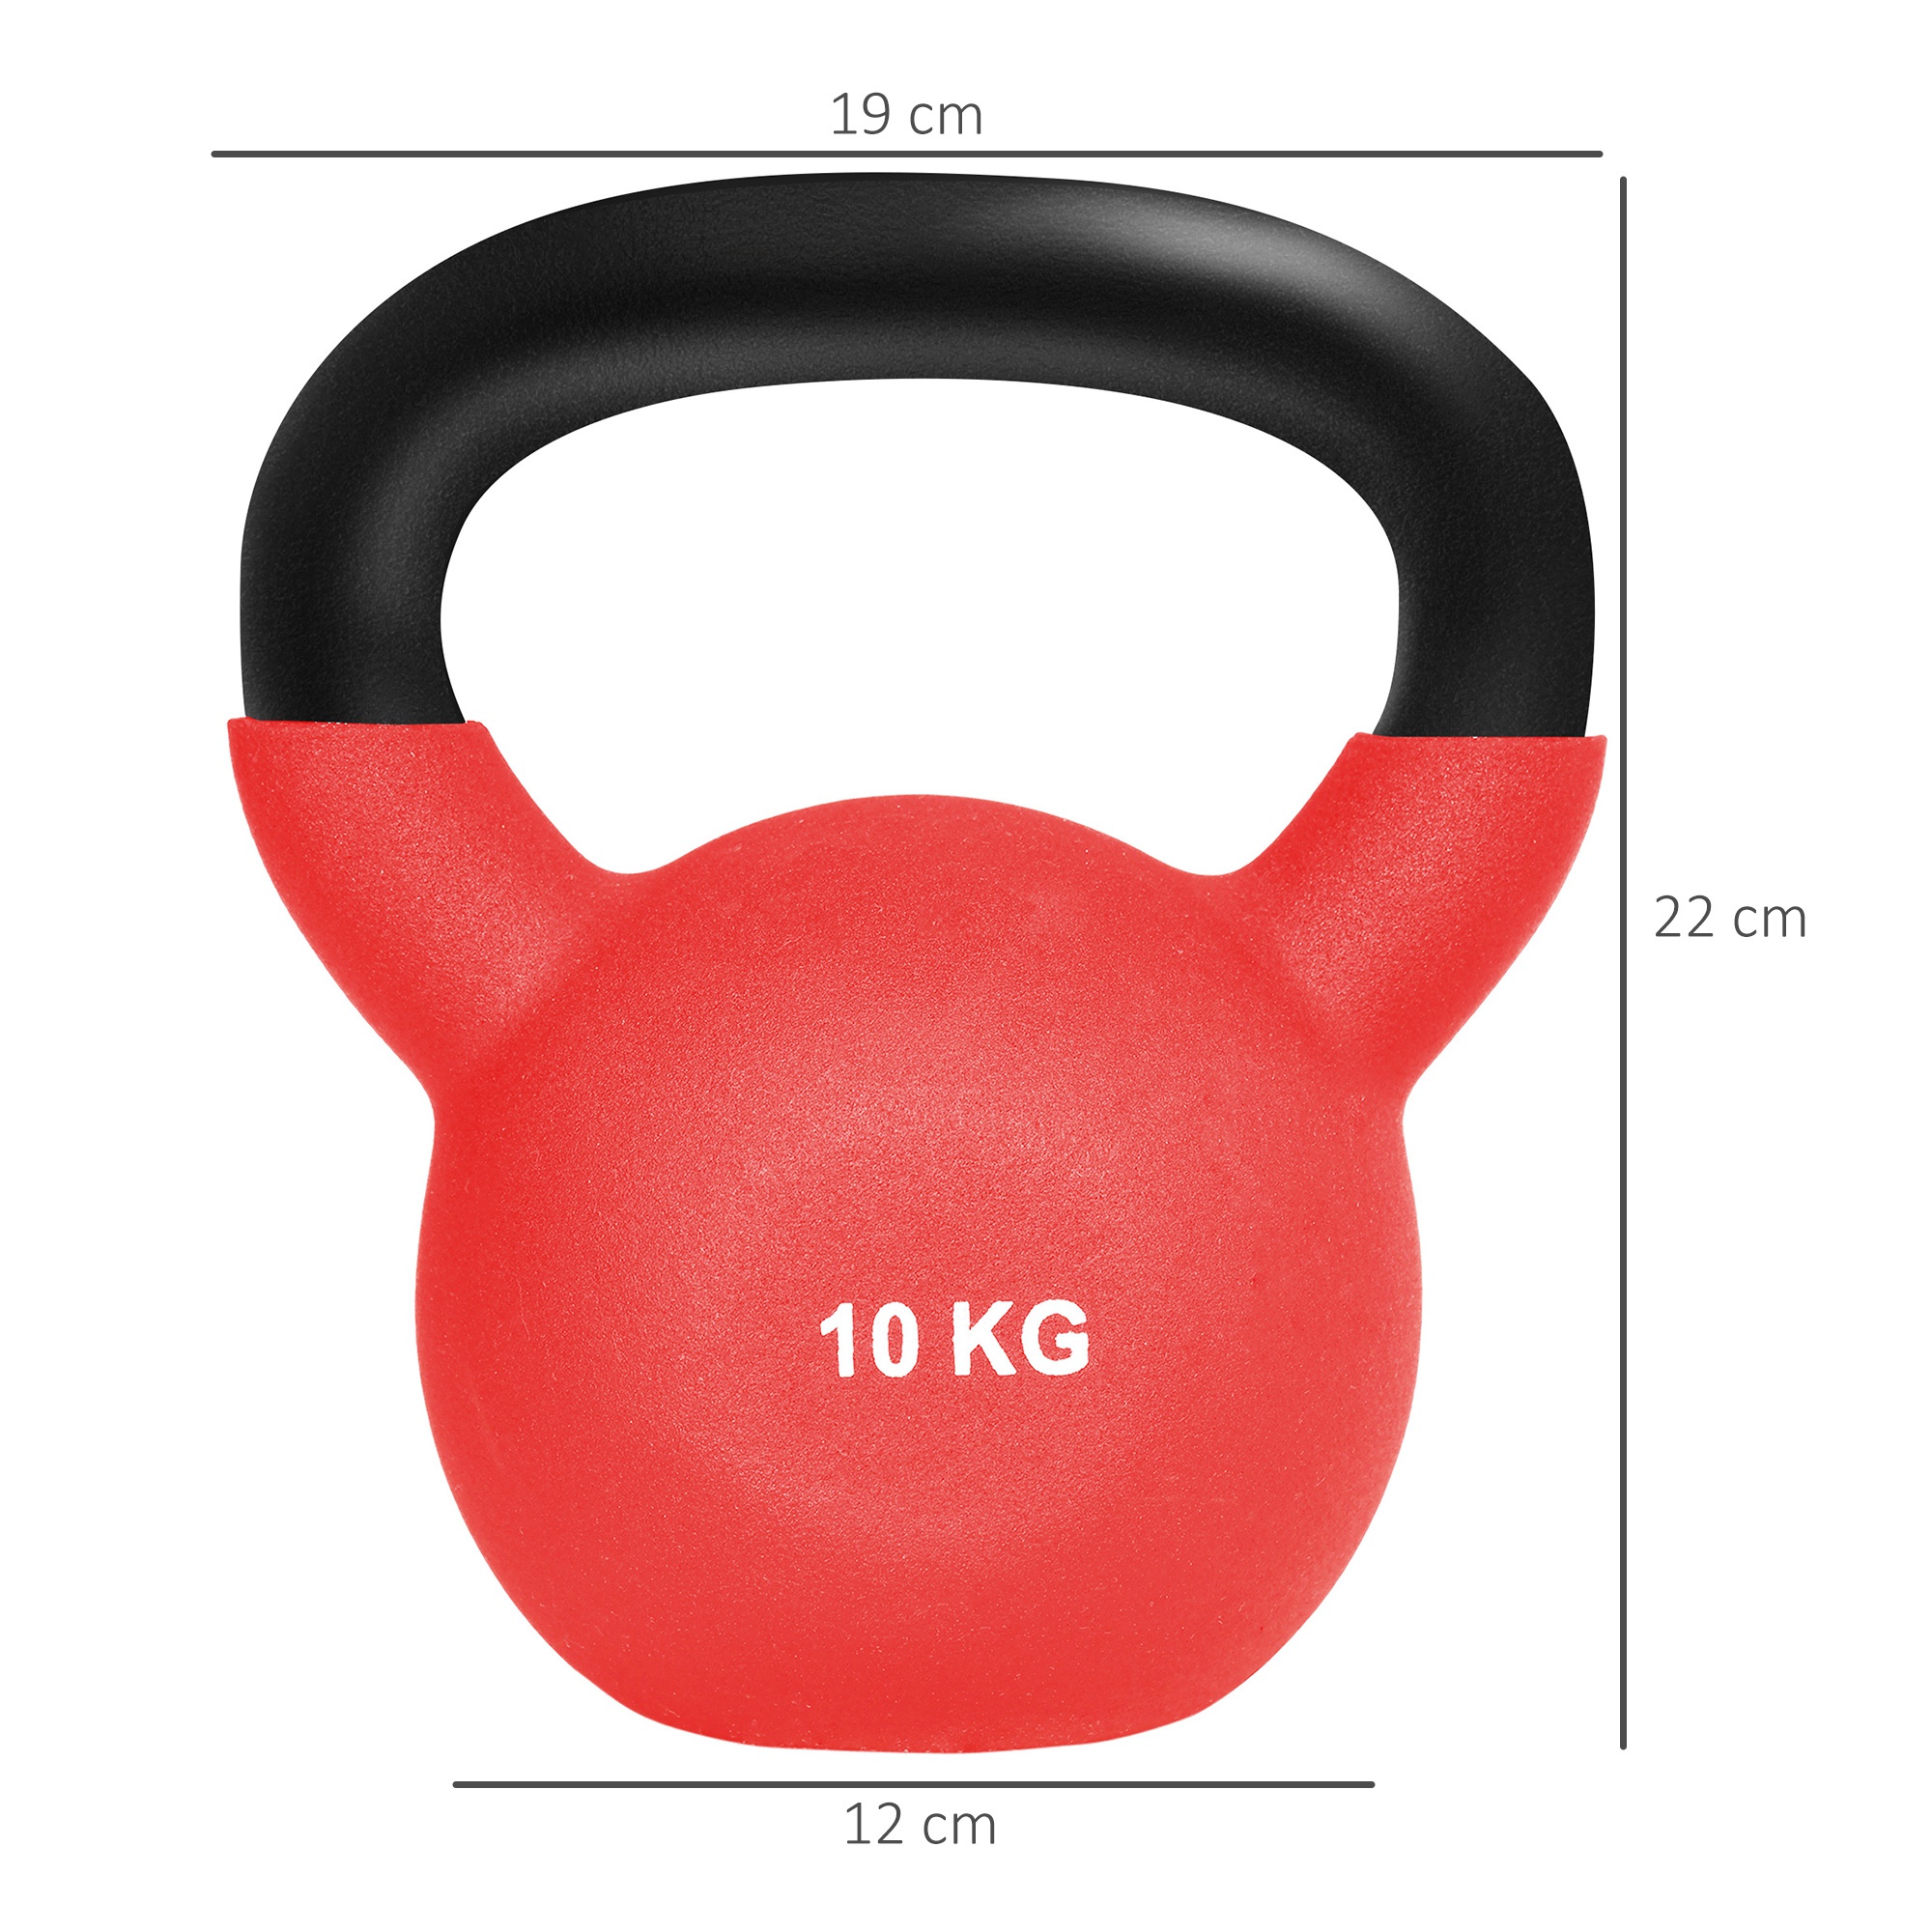 Kettlebell De 10kg Homcom A91-241v01rd